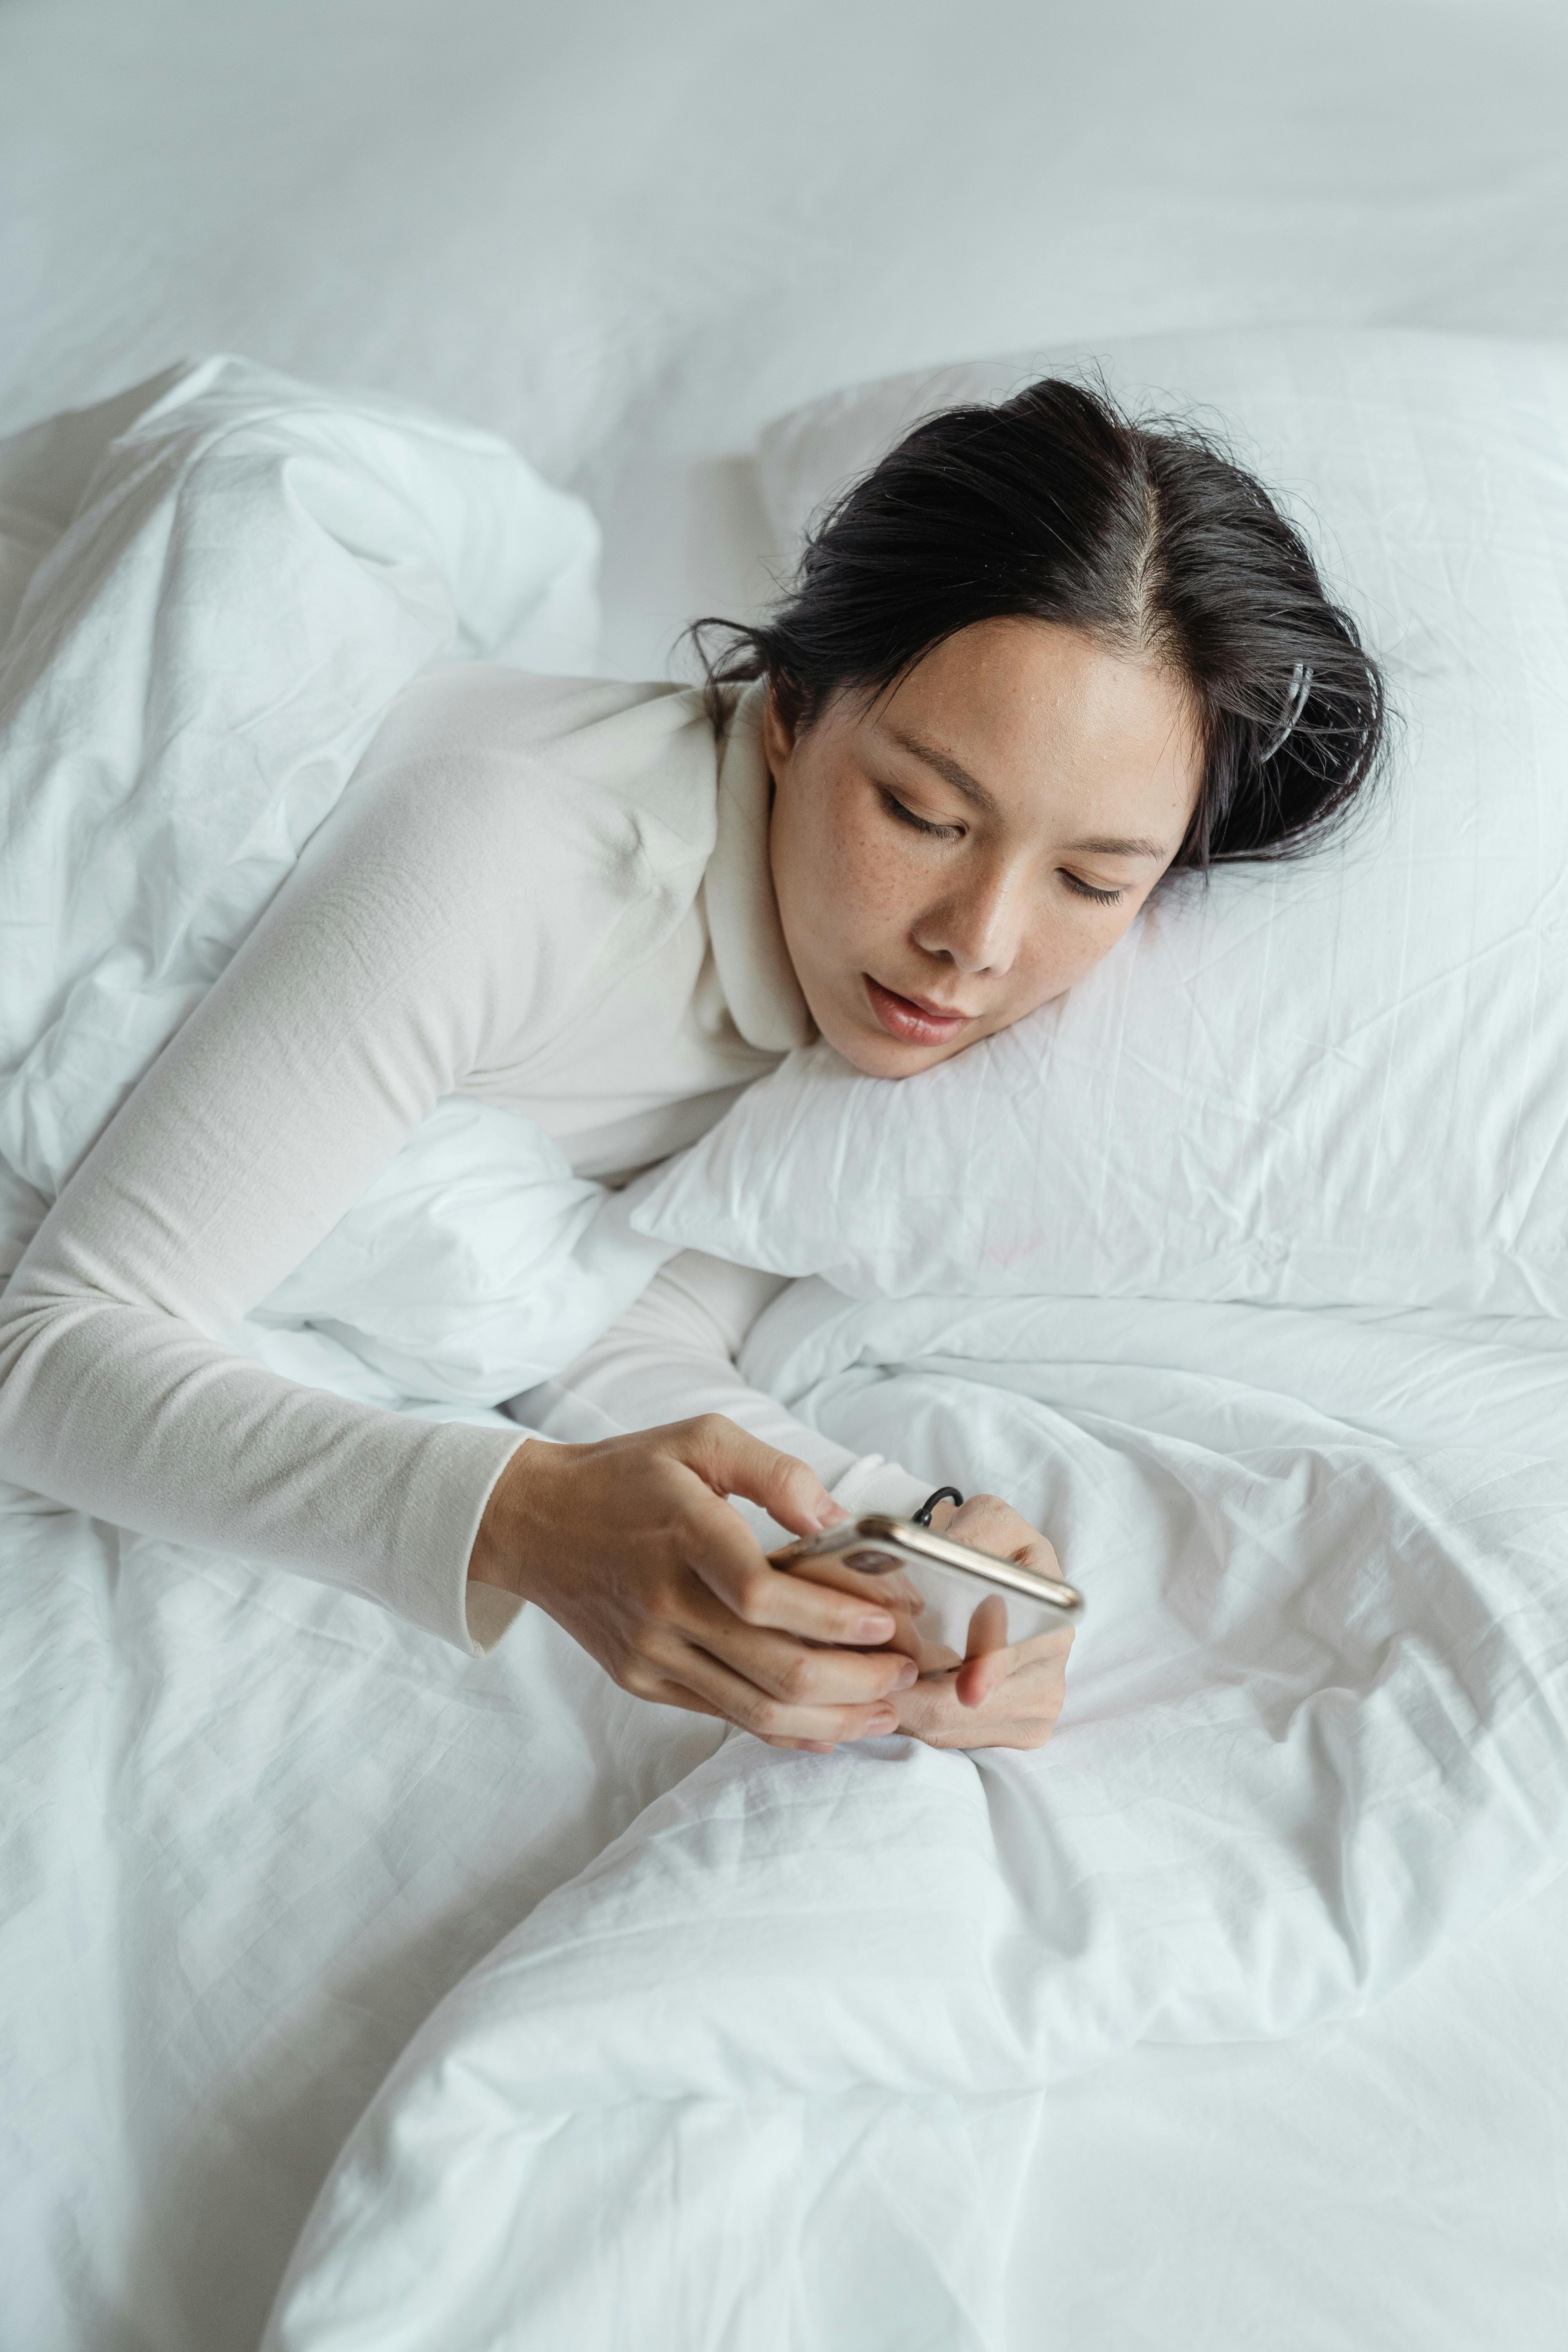 Une femme envoyant des textos sur son téléphone alors qu'elle est allongée dans son lit | Source : Pexels